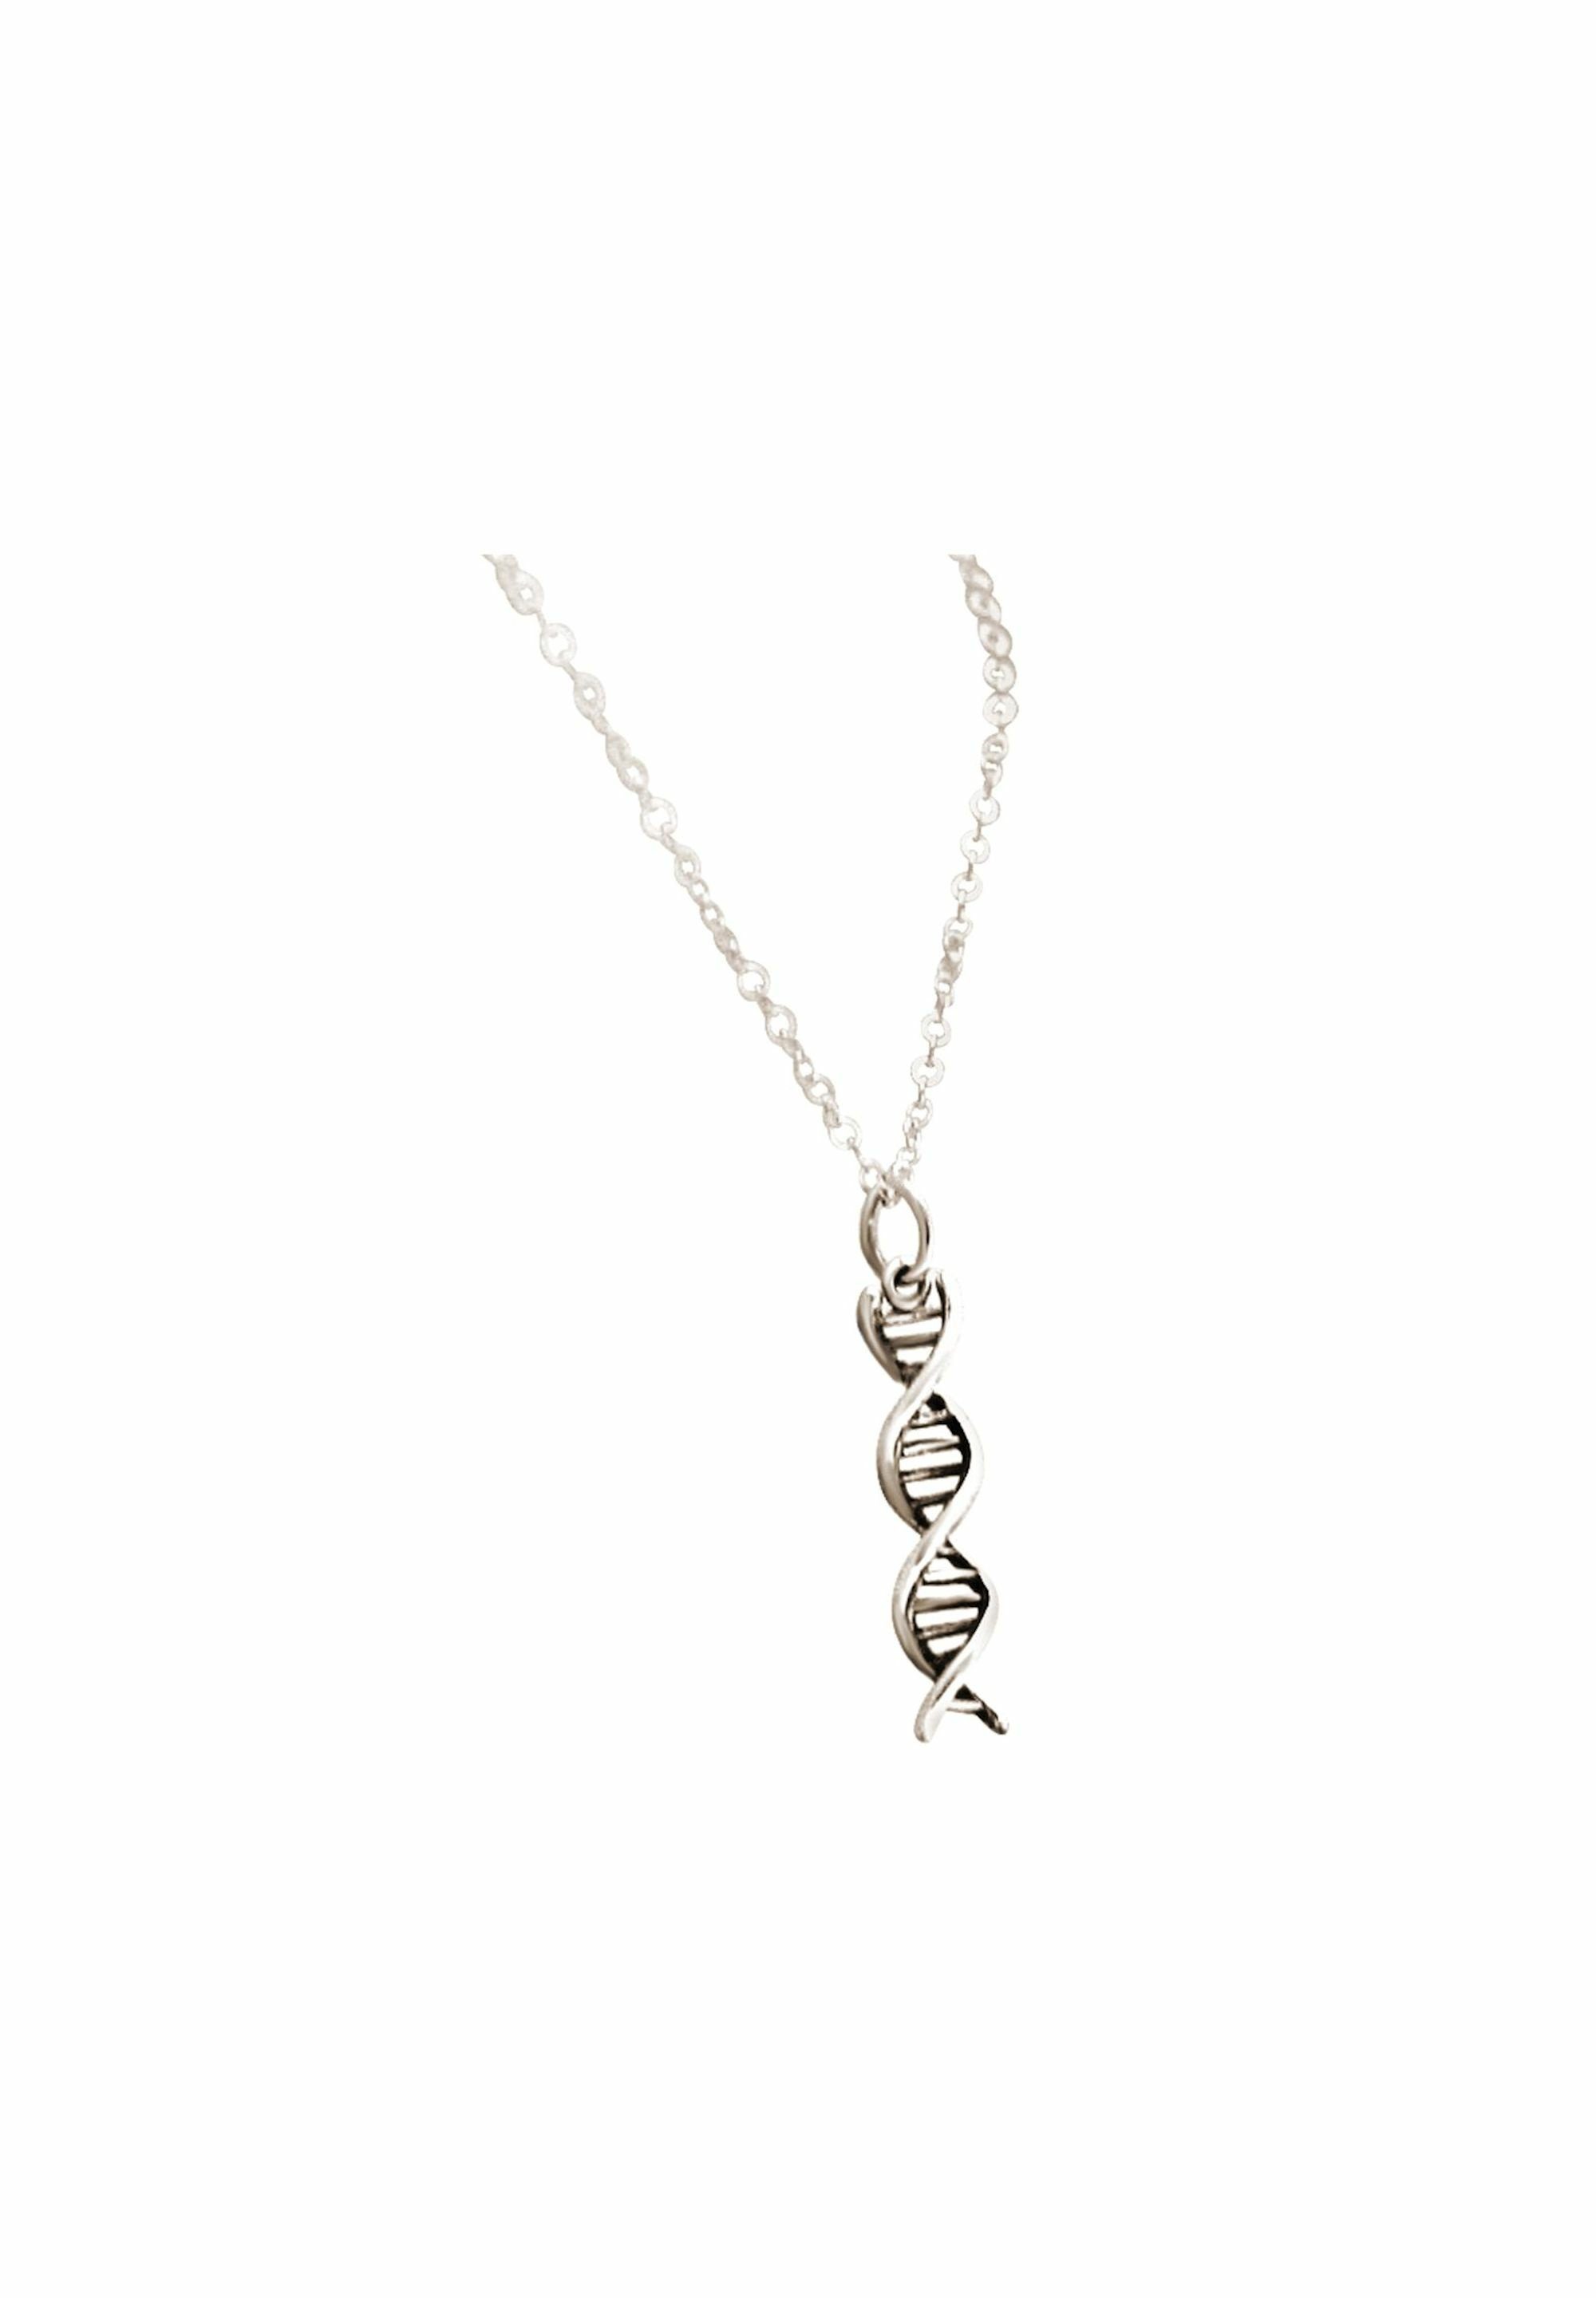 DNA Anhänger coloured silver mit Spiral Molekül Helix Gemshine Doppelt Kette